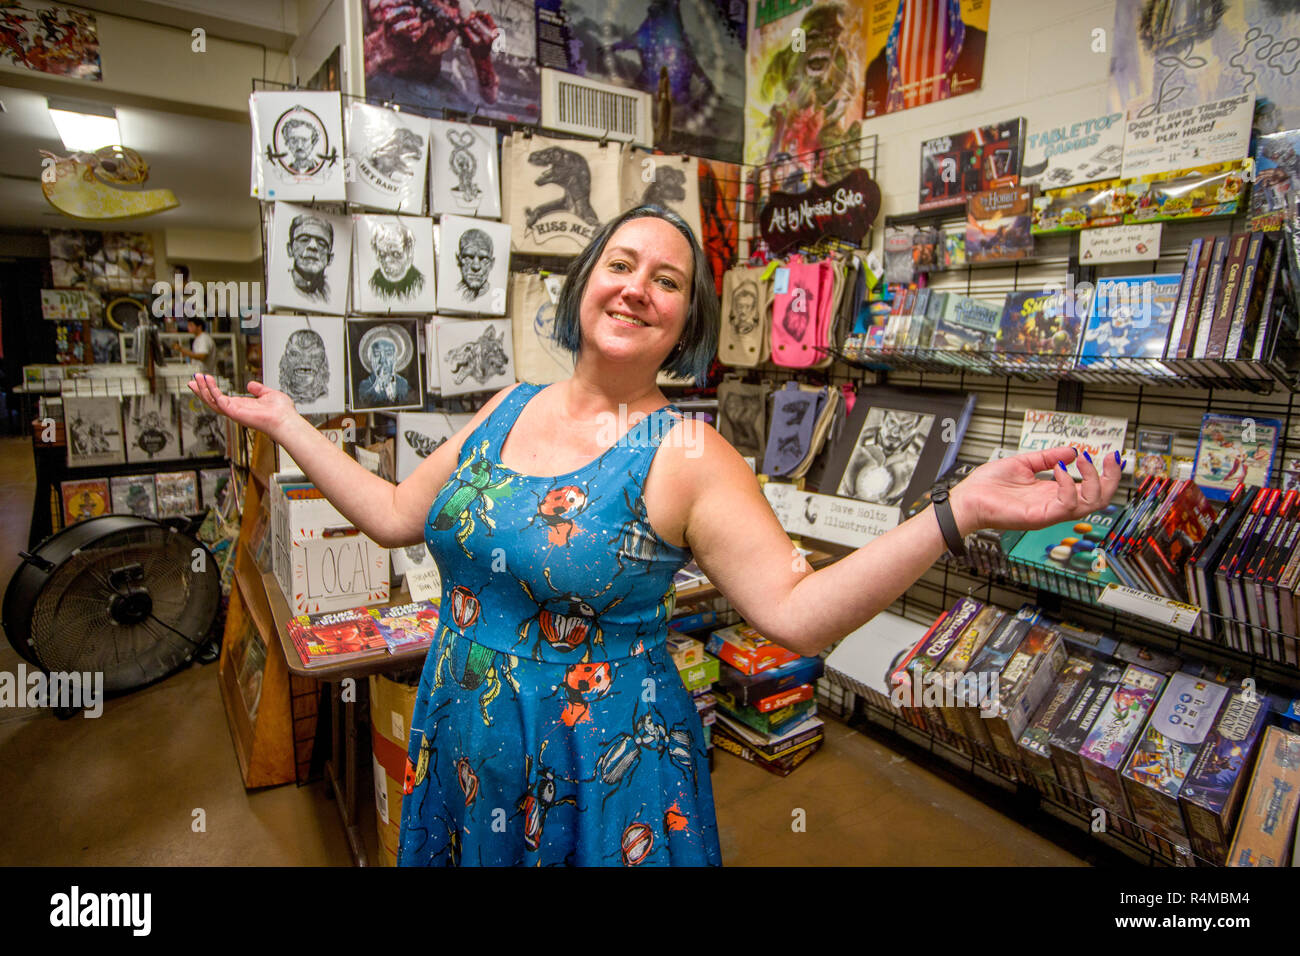 El propietario de una tienda de arte cómic en Fullerton, California, muestra con orgullo mostrar racks de su inventario. Foto de stock